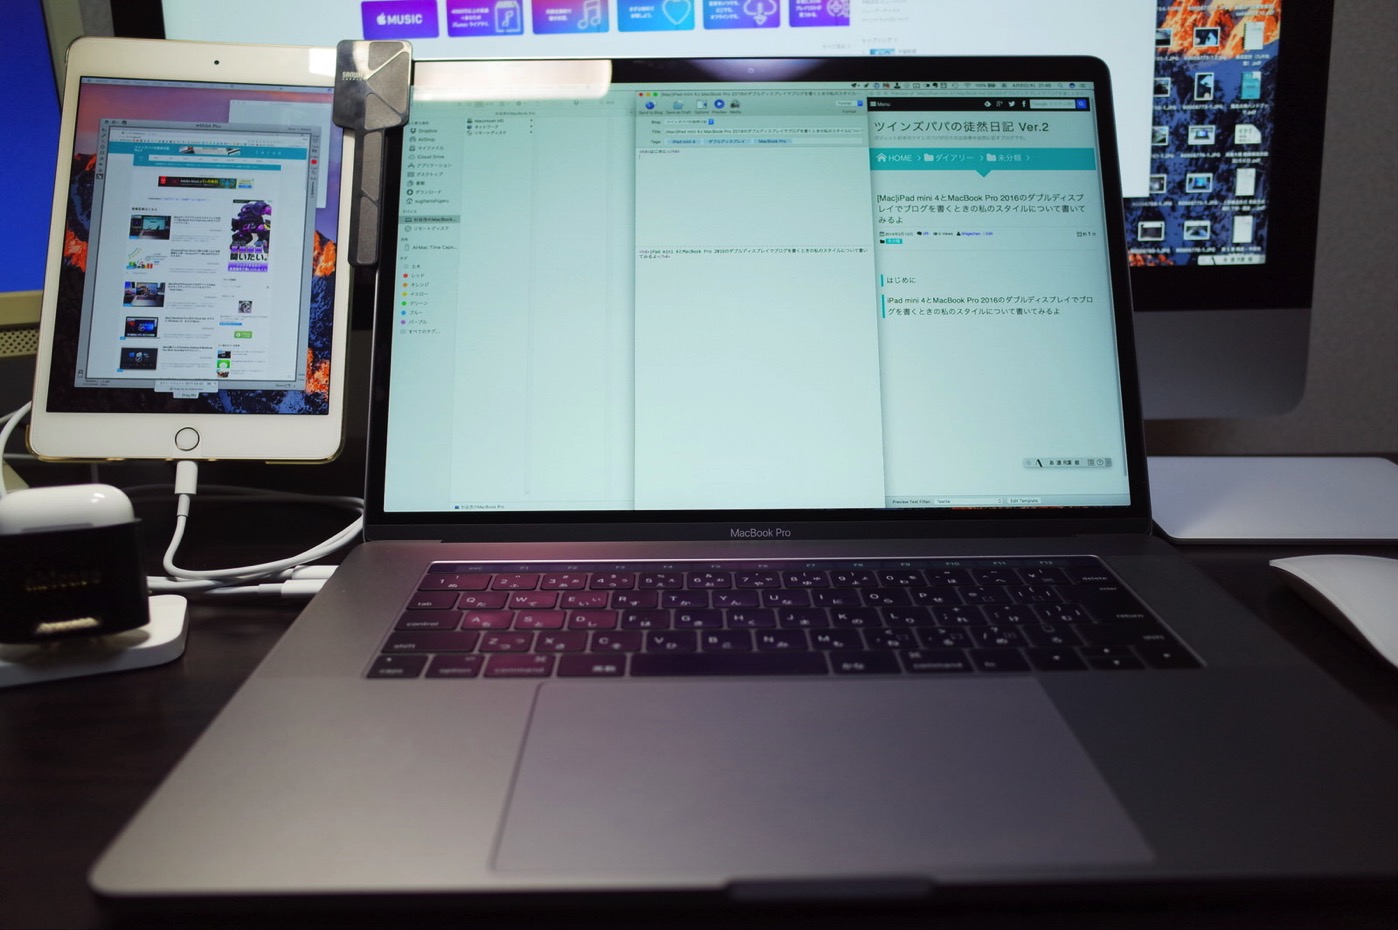 [Mac]iPad mini 4とMacBook Pro 2016のダブルディスプレイでブログを書くときの私のスタイルについて書いてみるよ